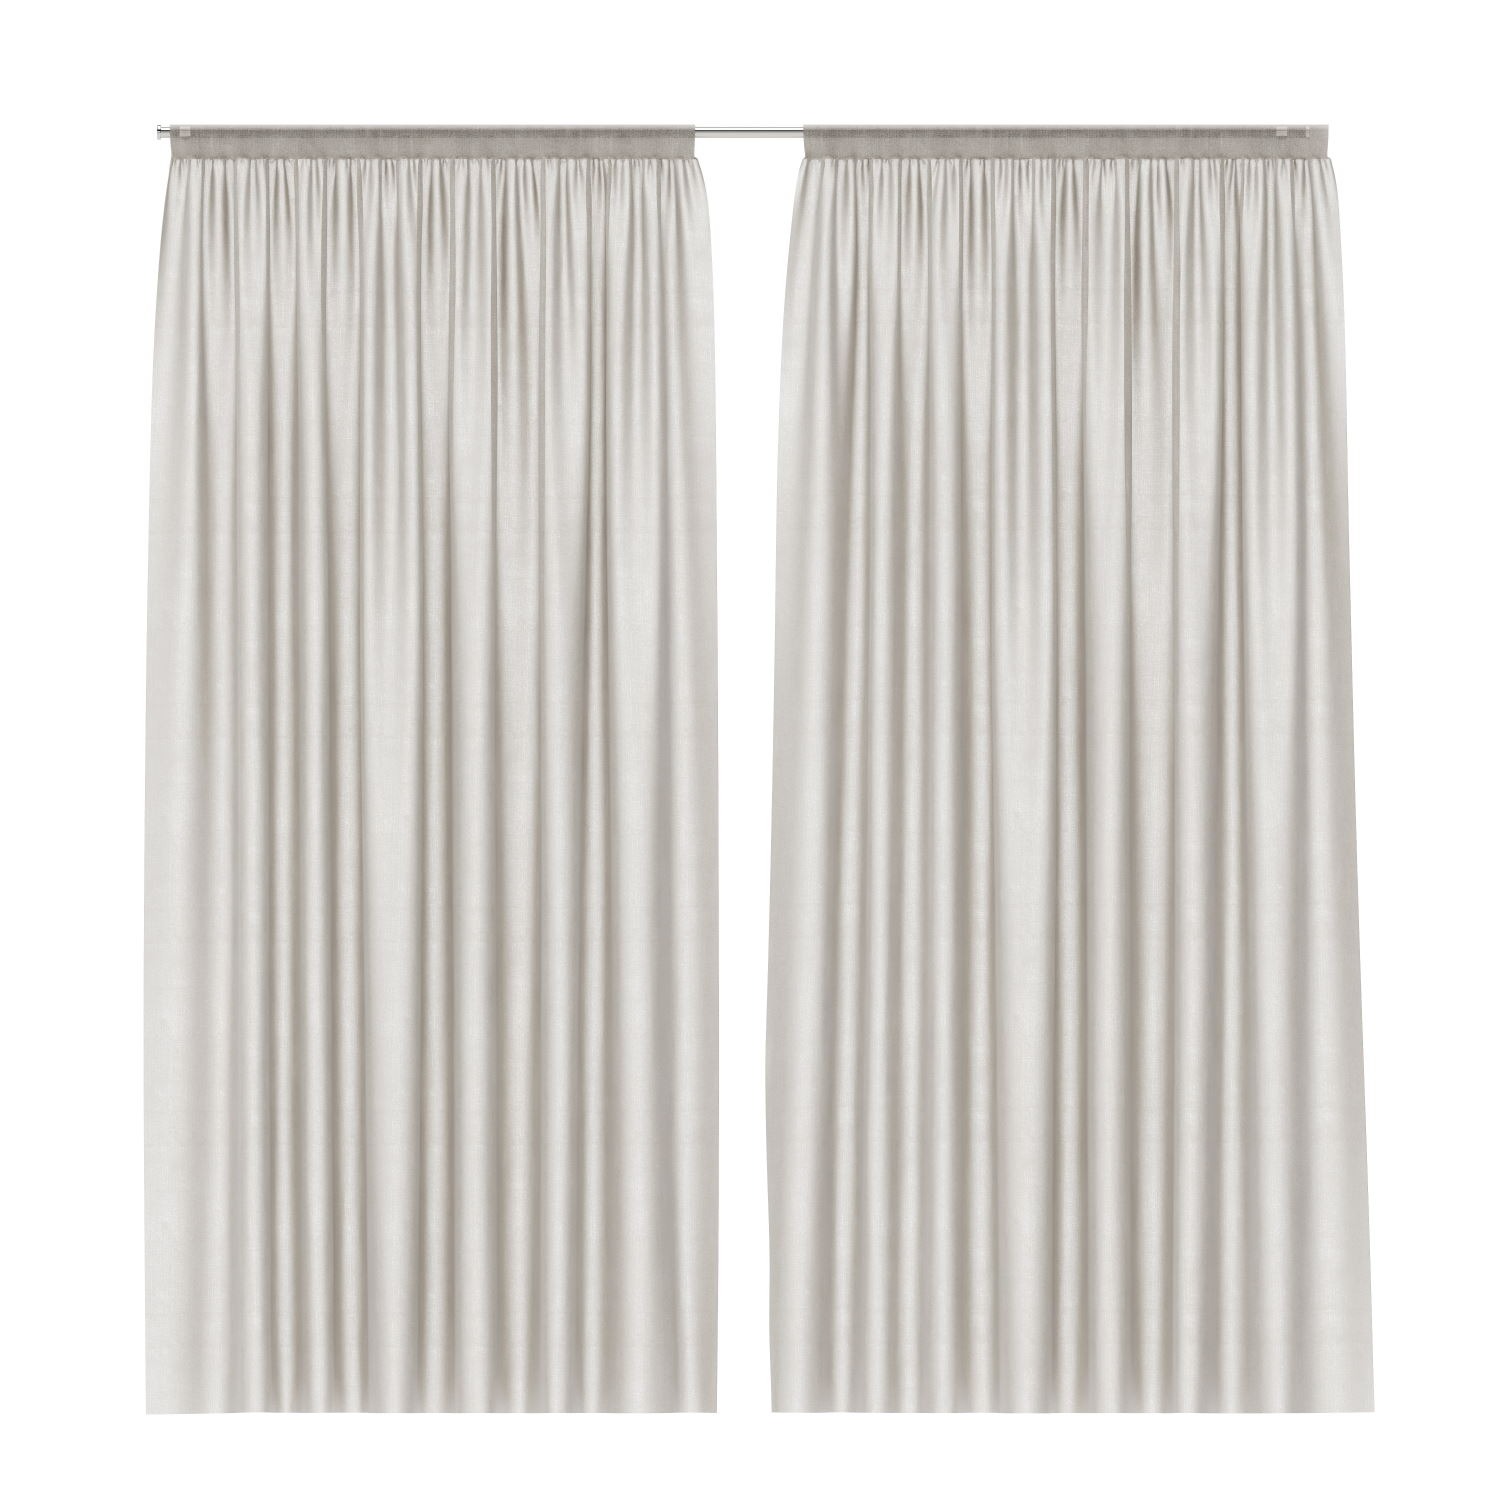 Barre décorative pour rideaux - diam. 29 mm - Subdéco - Bâti